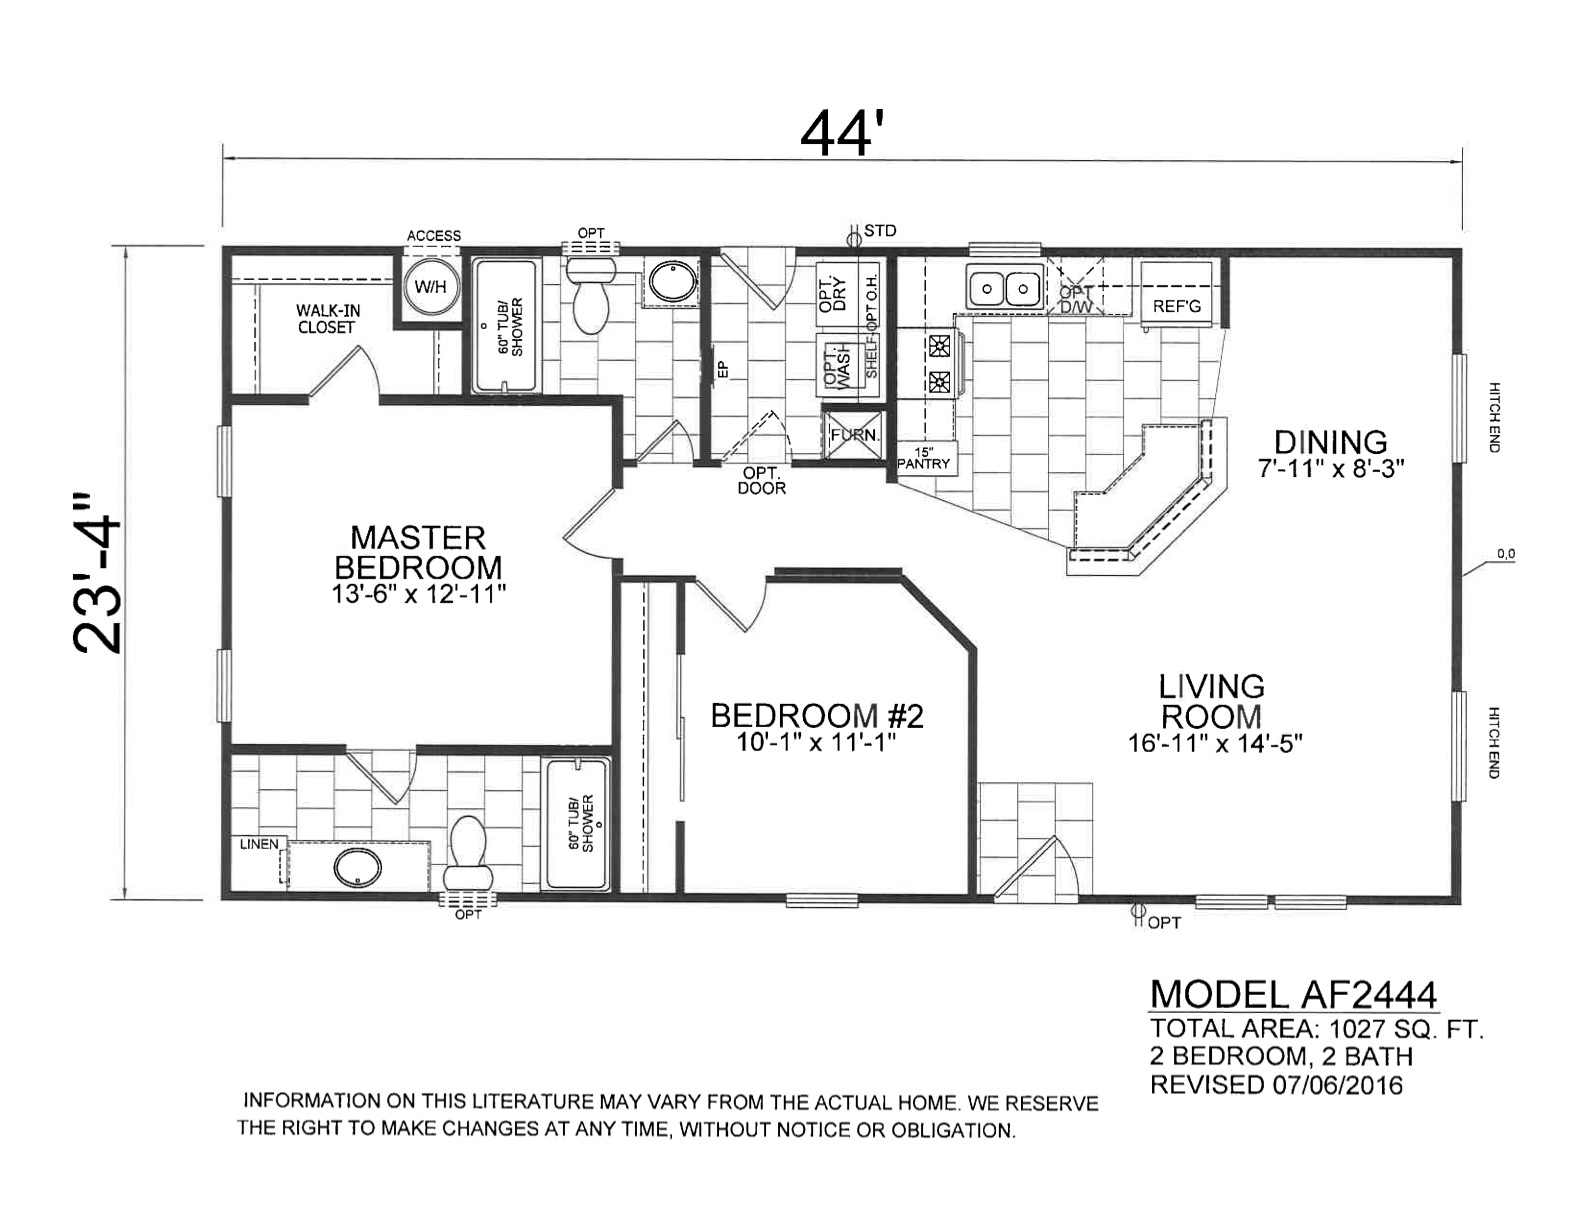 Homes Direct Modular Homes - Model AF2444 - Floorplan